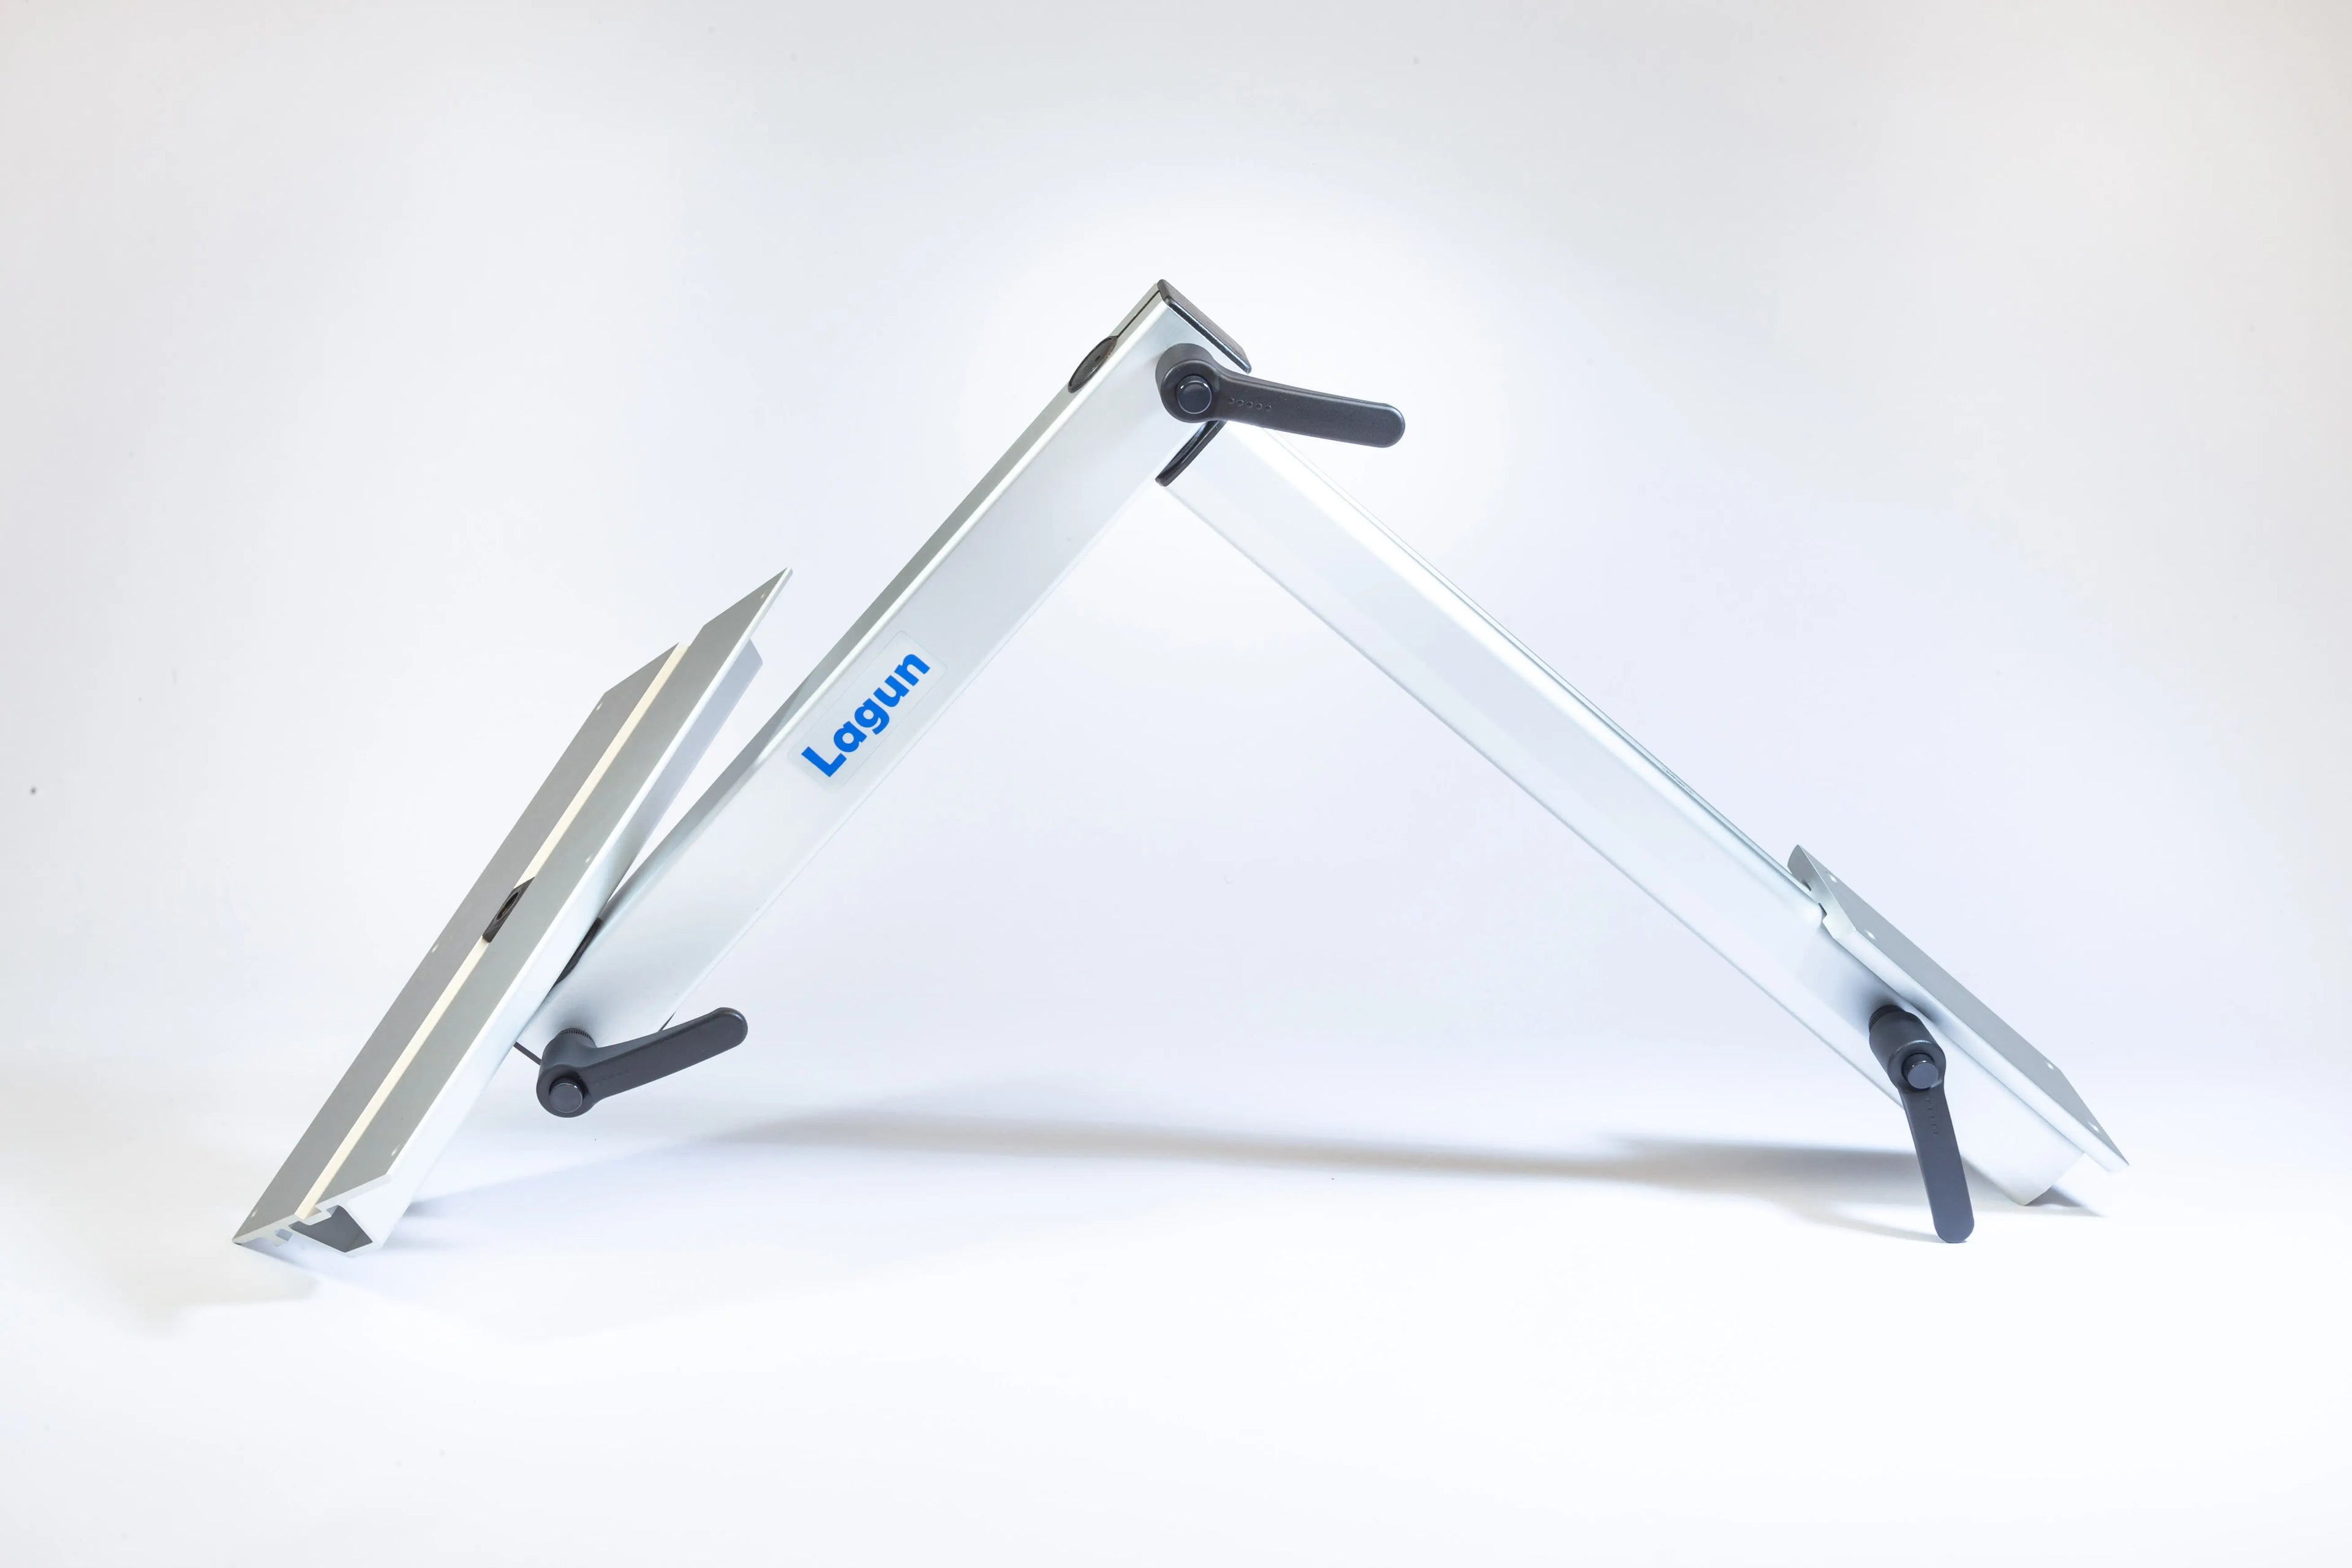 Lagun Tischgestell - flexibler Tisch für Wohnmobile &amp; Camper